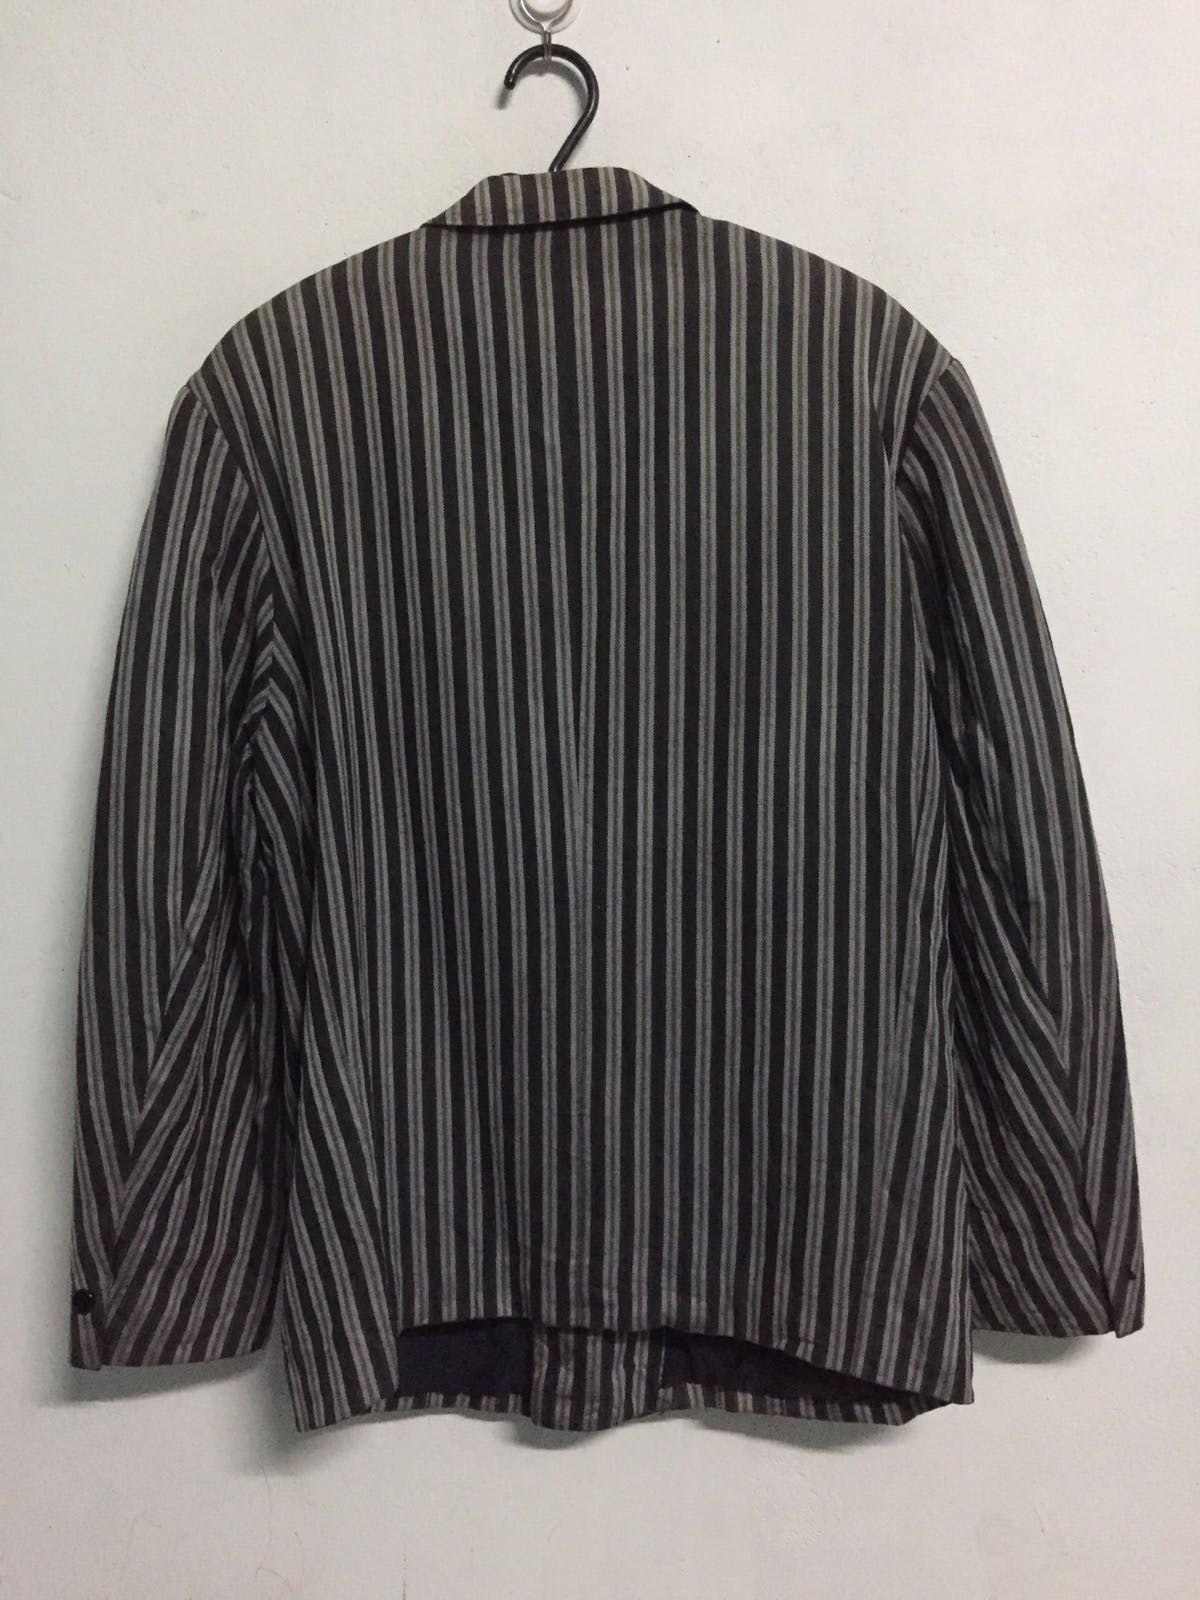 Kenzo Zebra Stripes Jacket Coat Made in Japan - 7